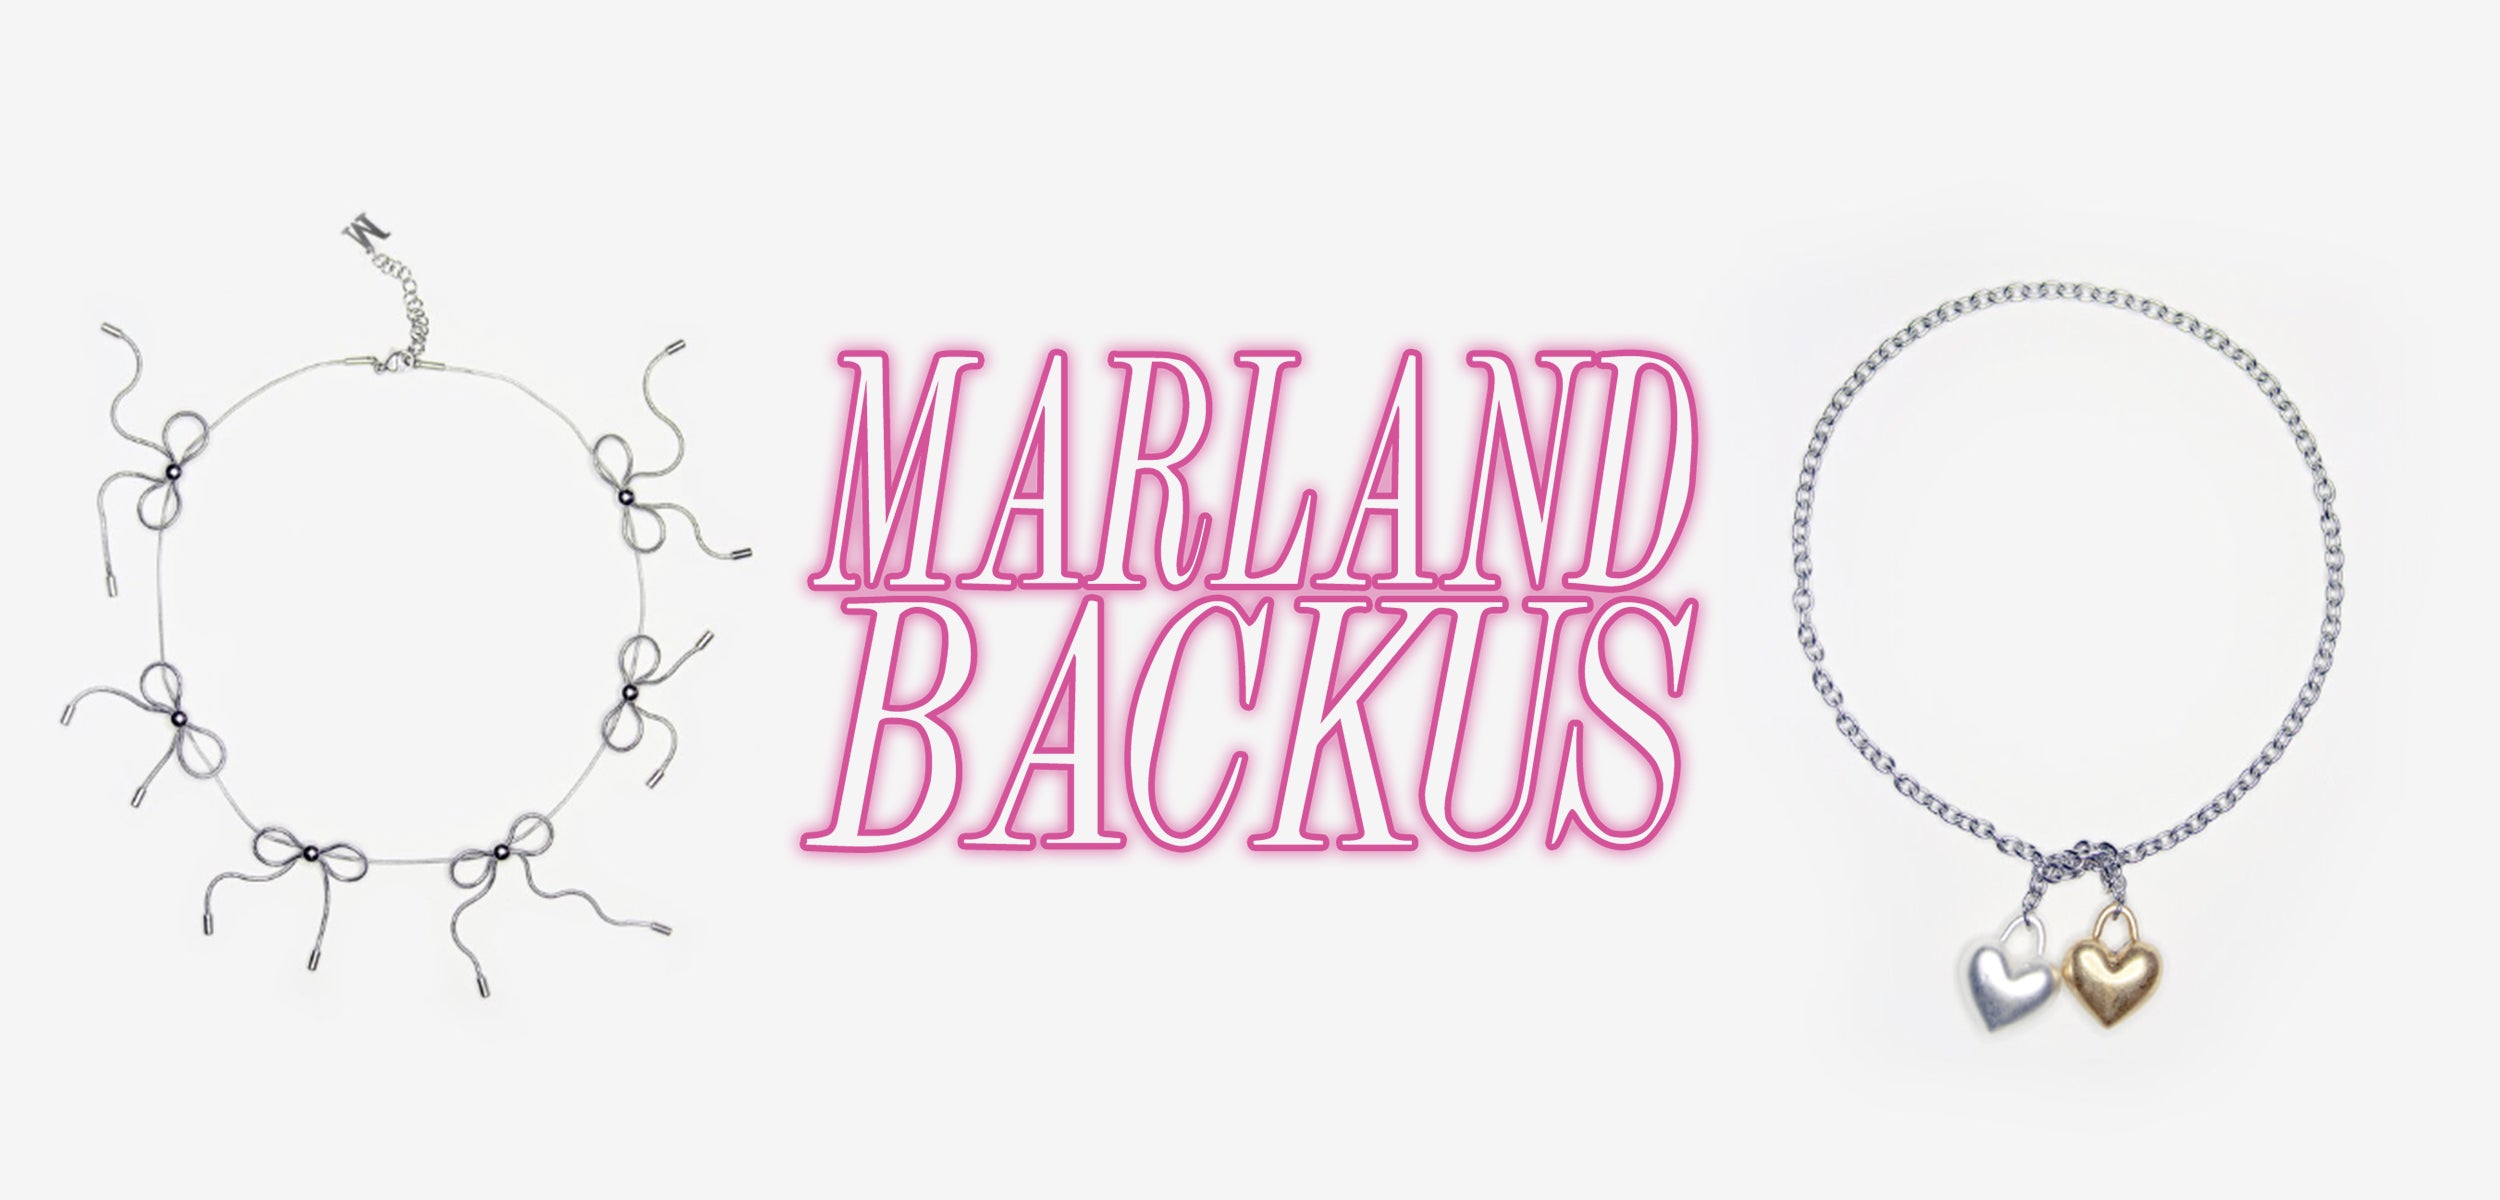 Marland Backus